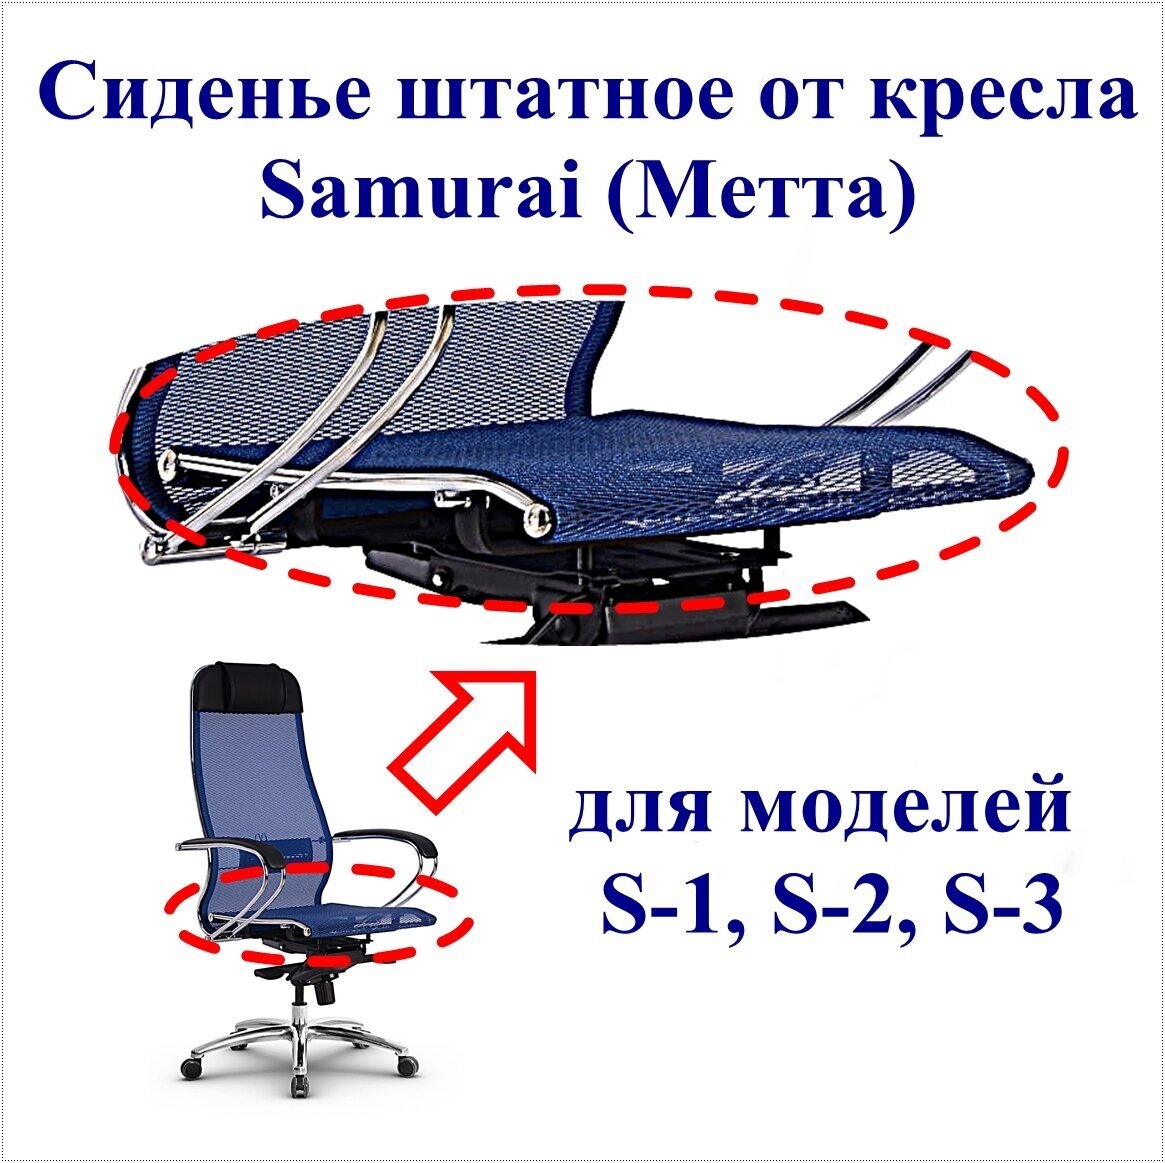 Сиденье штатное для кресла Samurai Метта. Применяемость: модели S-1, S-2, S-3. Материал: сетчатая ткань, цвет синий. Нагрузка до 120 кг.